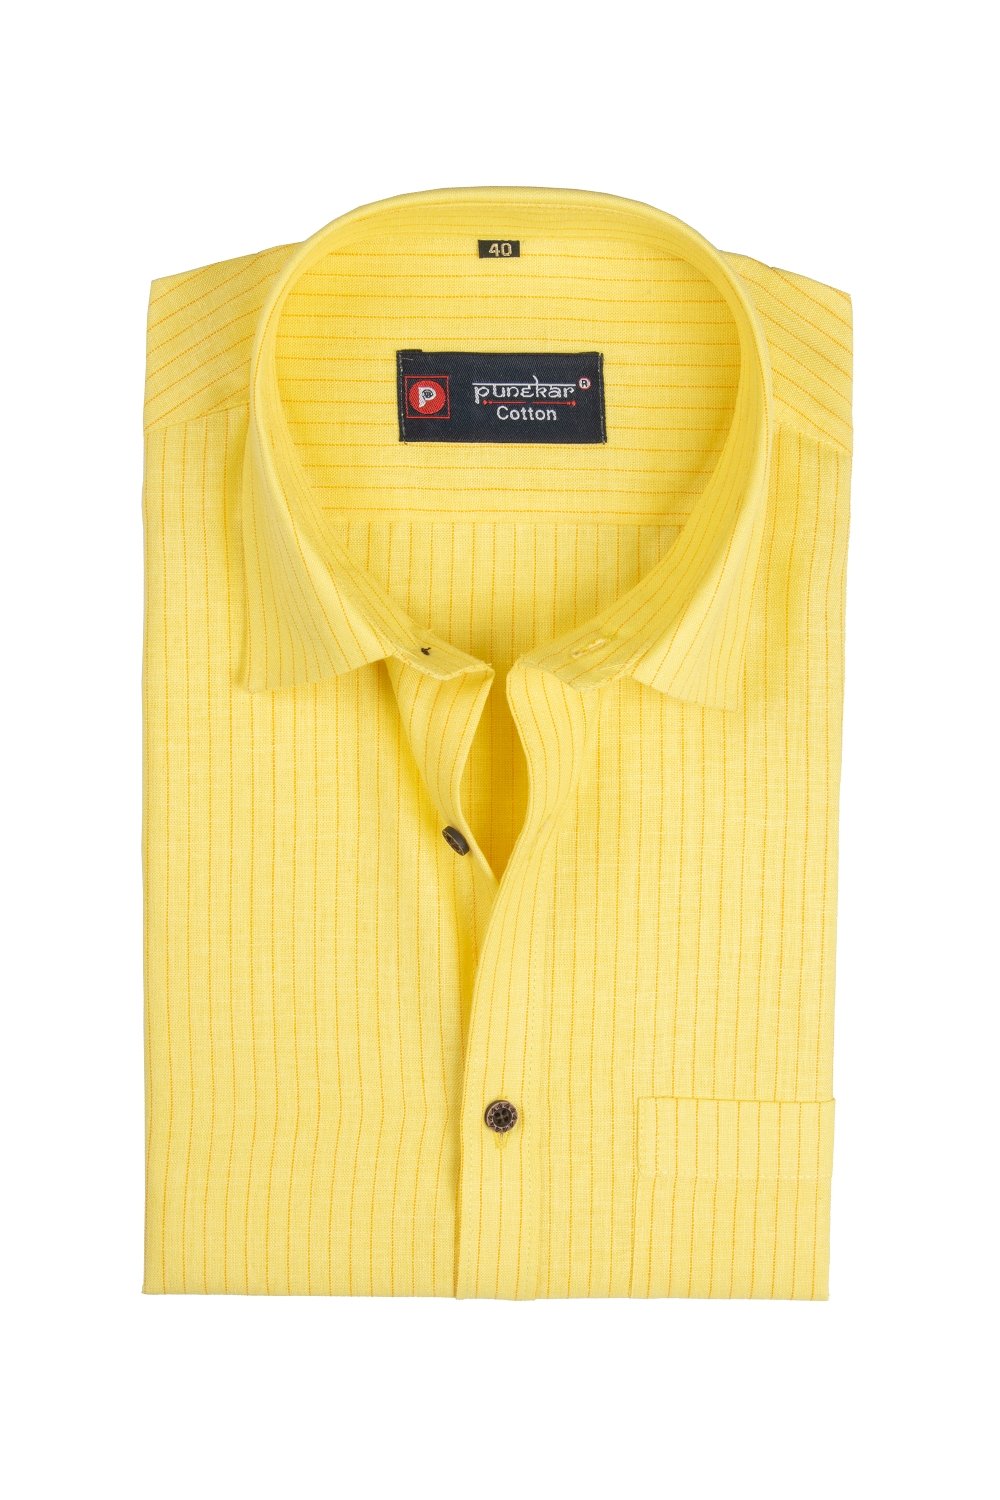 Punekar Cotton Dark Yellow Color Linning Criss Cross Woven Cotton Shirt for Men&